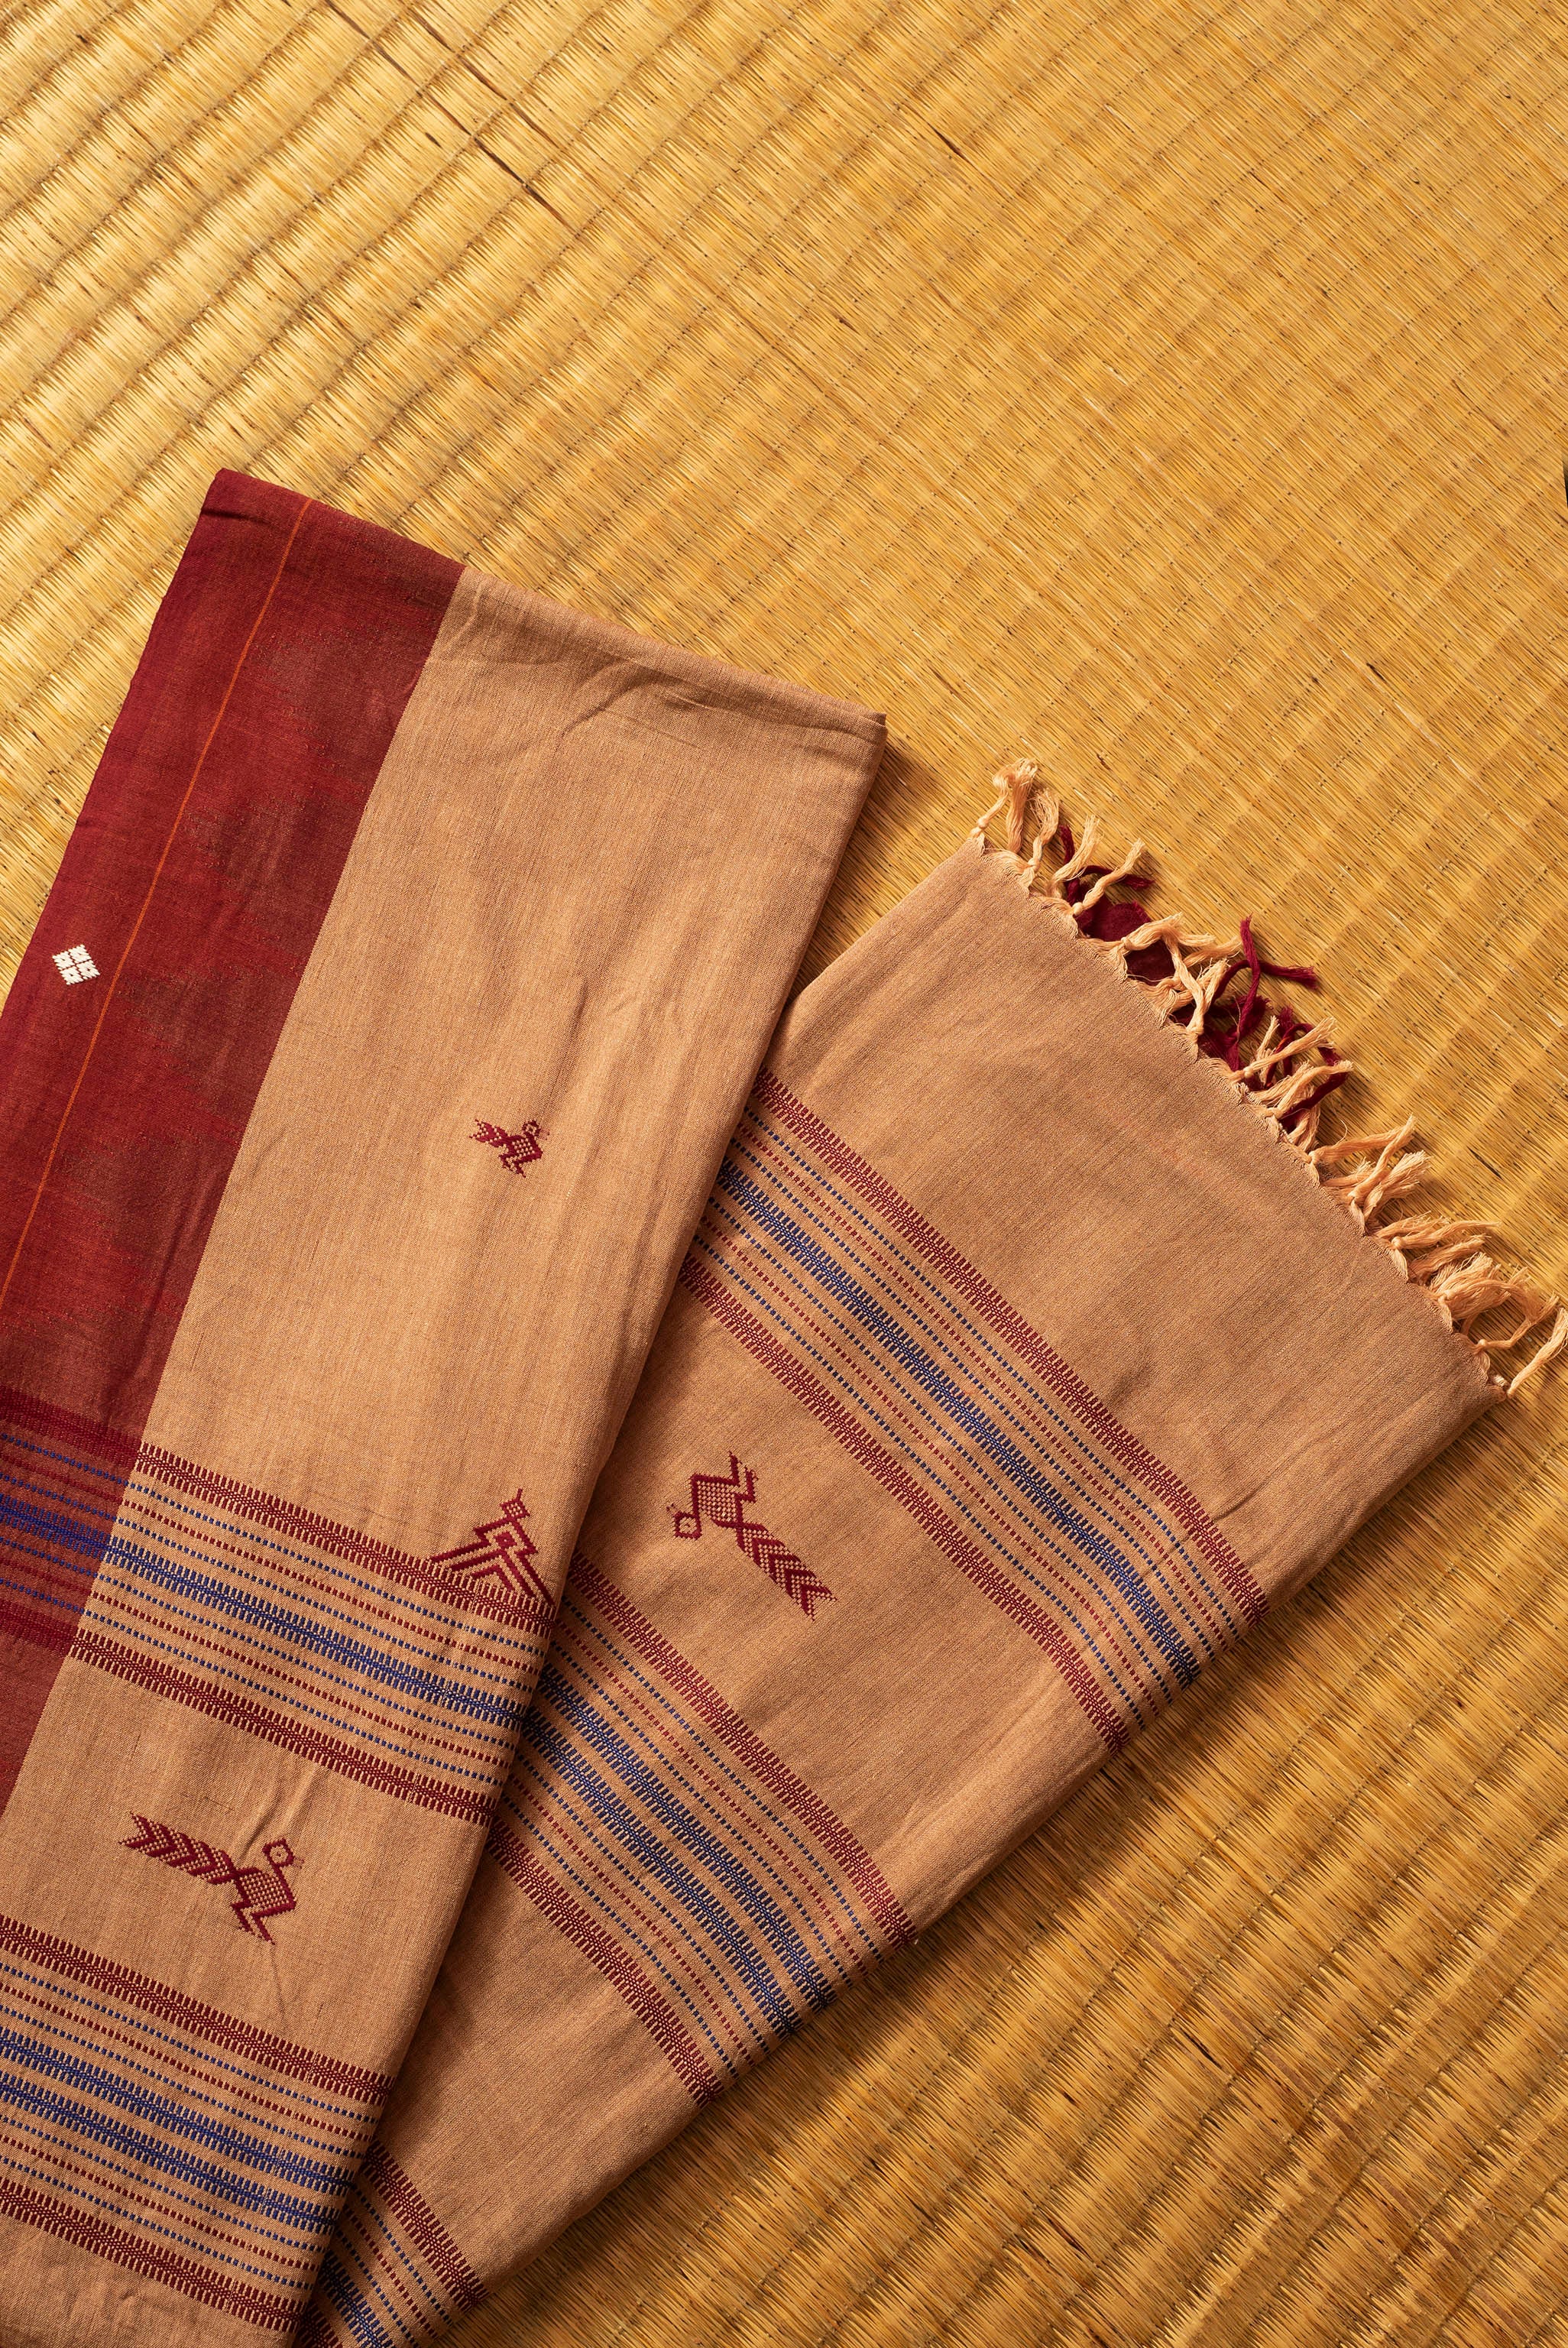 Kotpad handloom cotton saree | natural dyed | mud brown